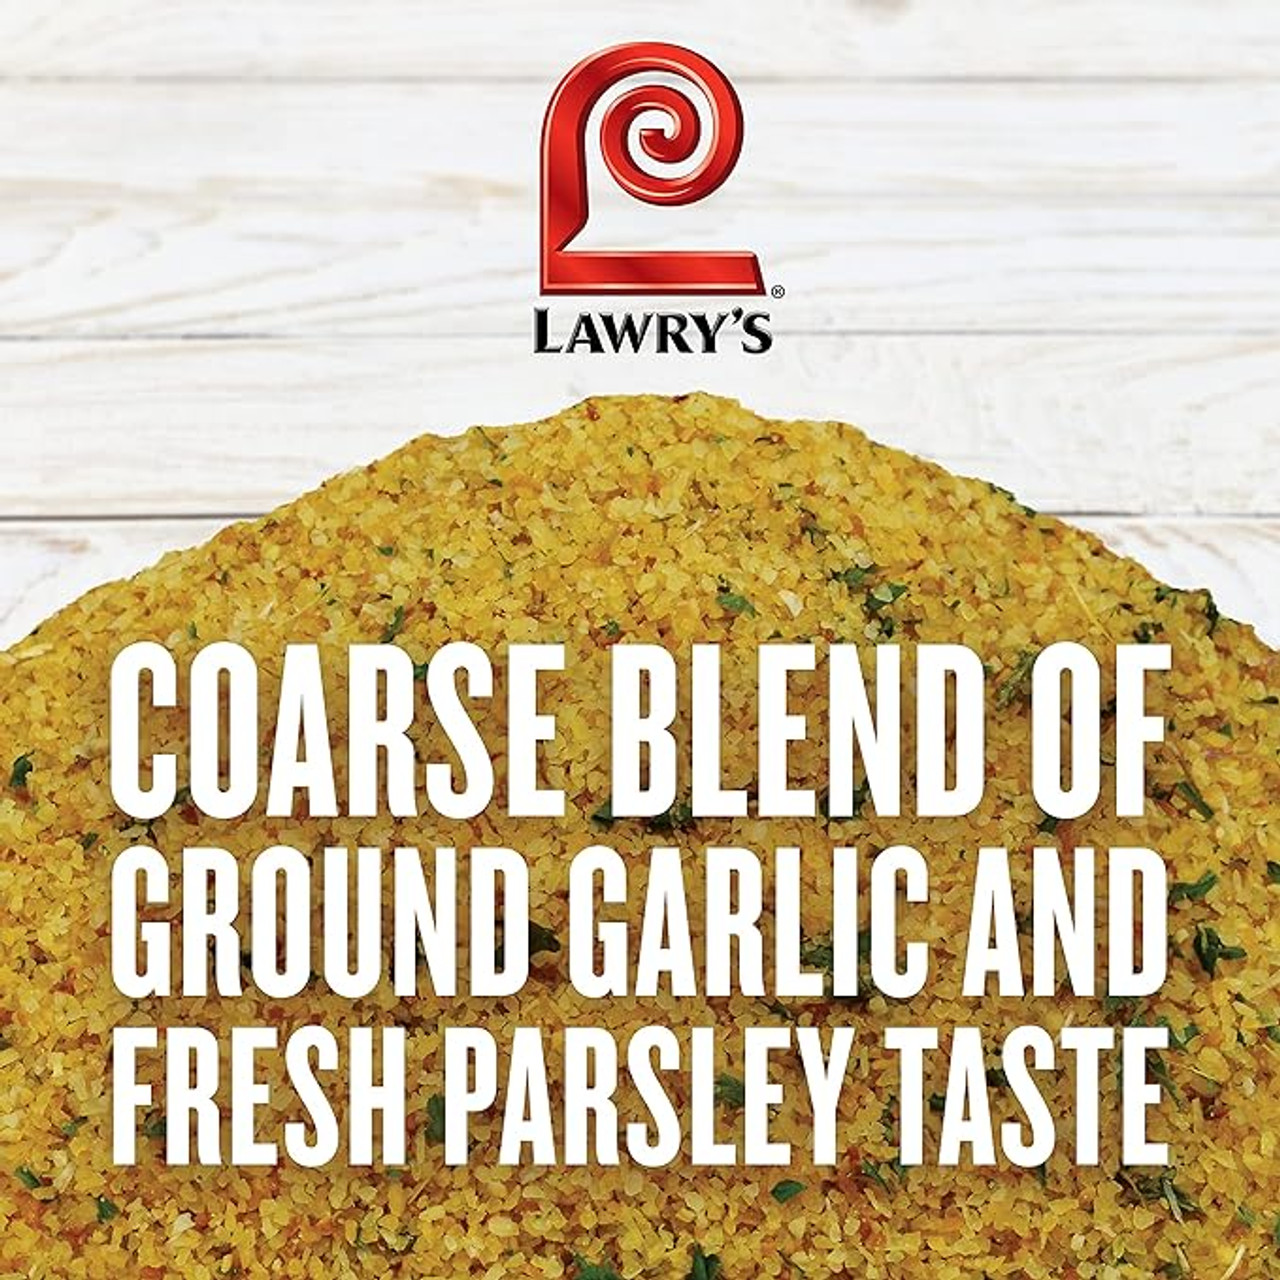 Lawry's Garlic Powder Pre-mixed spice with Parsley, Coarse Grind, 24 oz.  6/Case - Chicken Pieces